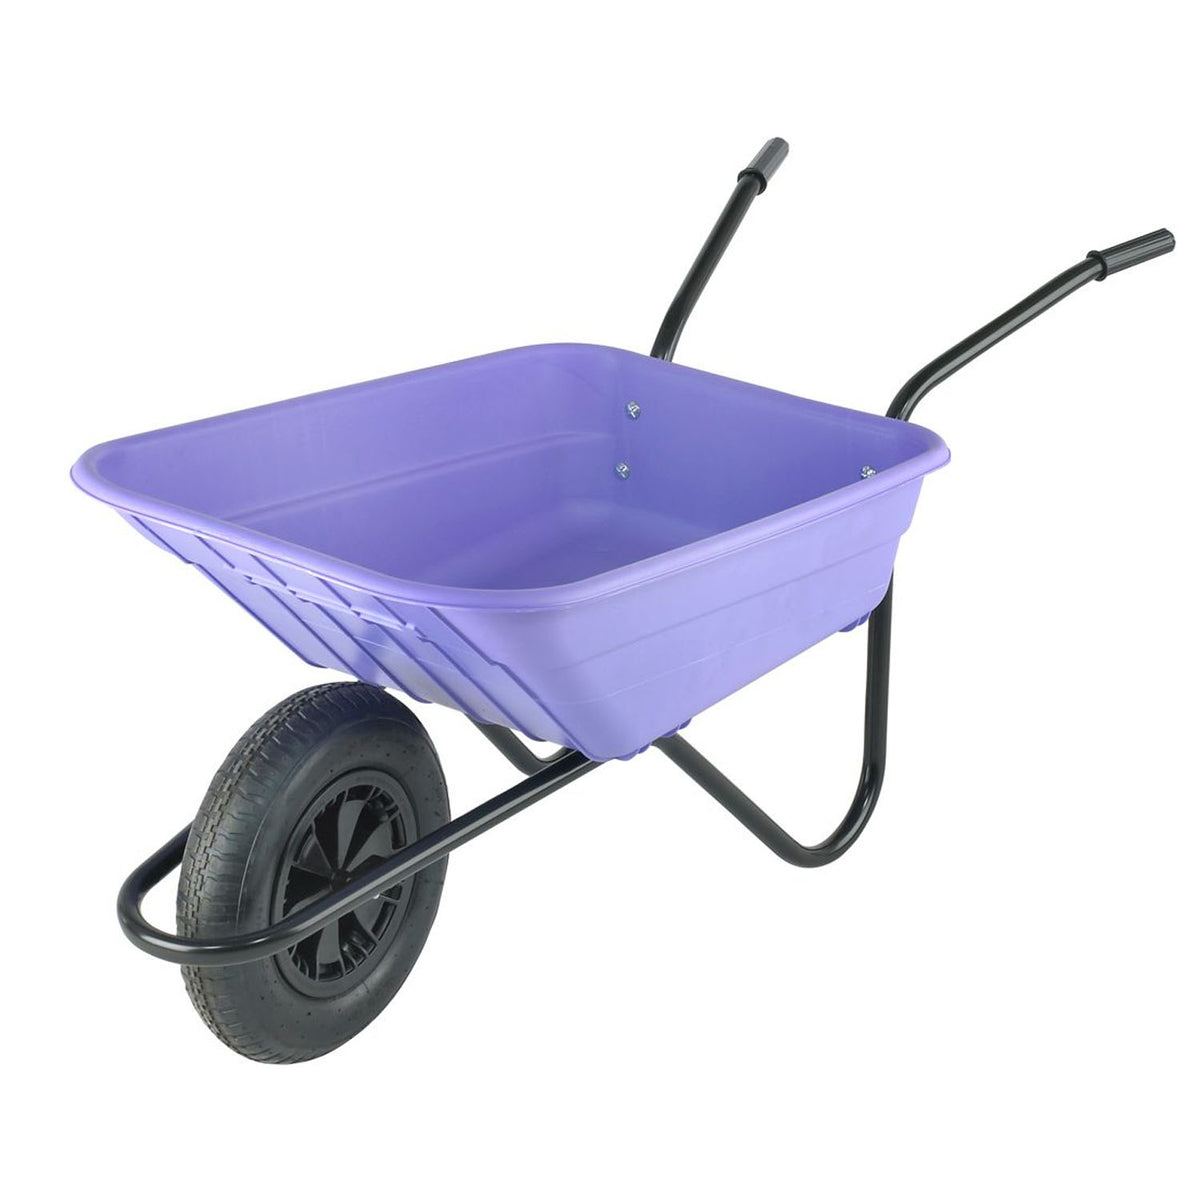 90 Litre Heavy Duty Plastic Wheelbarrow – Lilac / Purple – Pneumatic Wheel